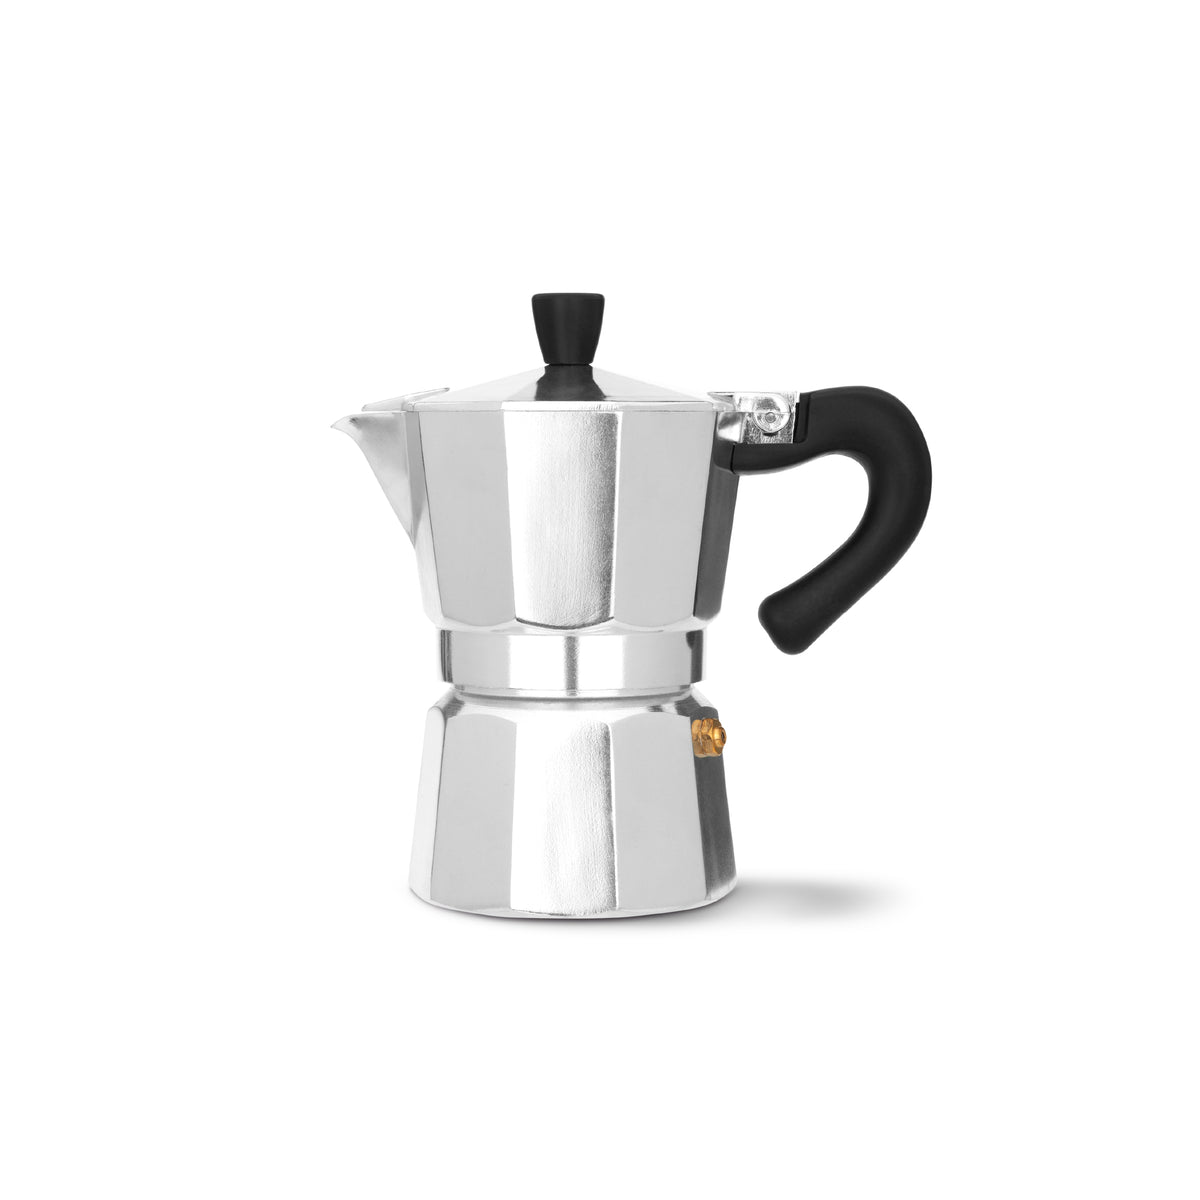 https://espresso-works.com/cdn/shop/products/espressoworks-three-cup-moka-pot-stovetop-espresso-maker_1200x.jpg?v=1604993394